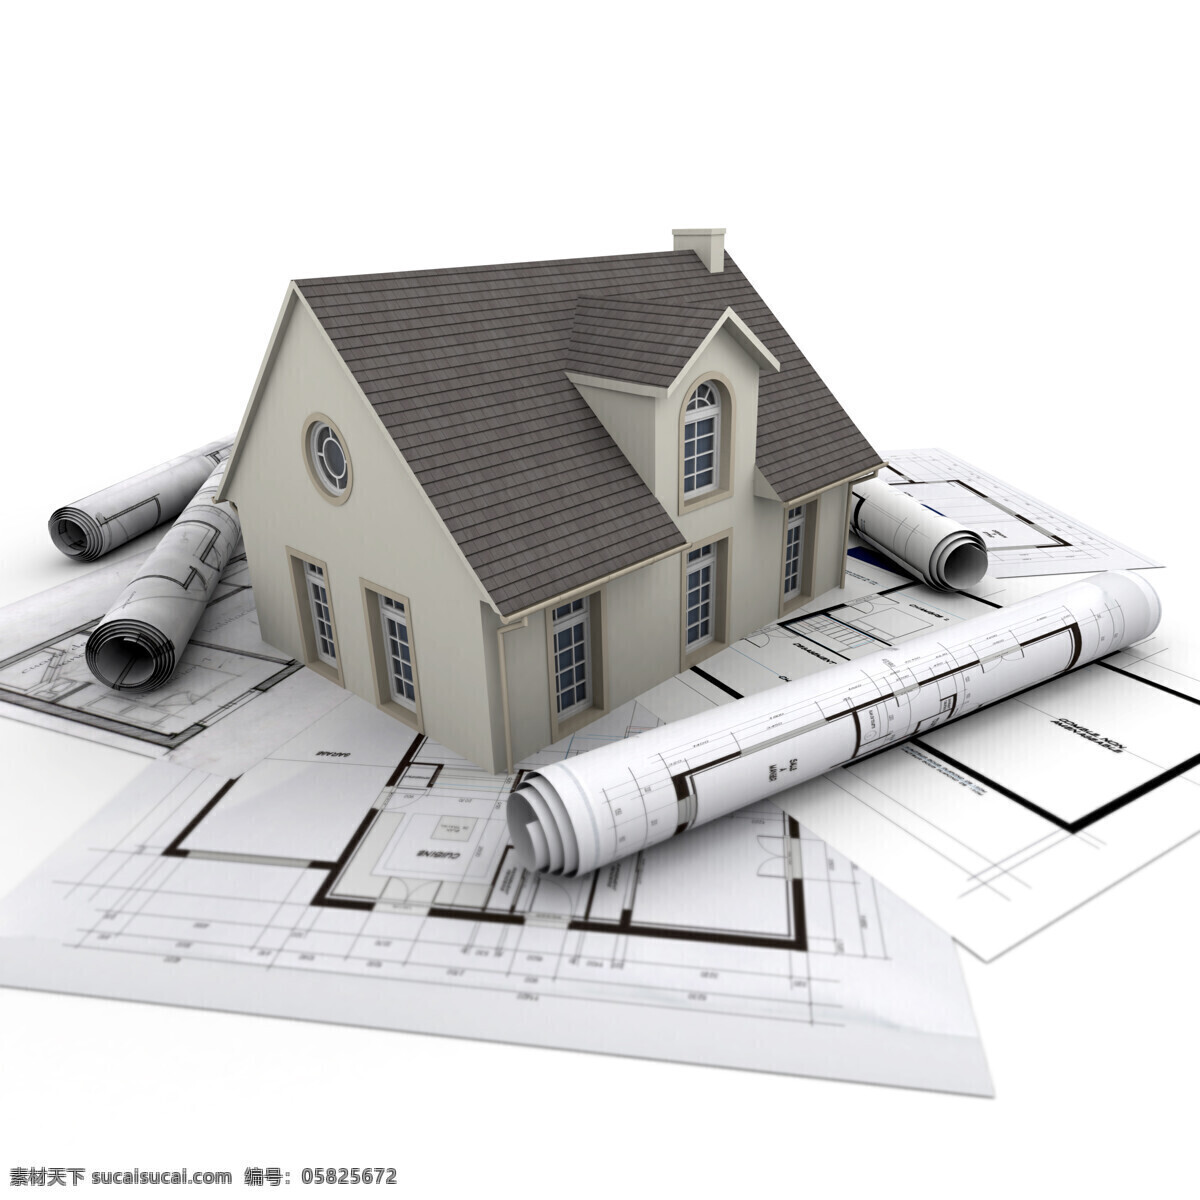 图纸 上 别墅 模型 设计图 建筑模型 房屋模型 建筑设计 别墅模型 环境家居